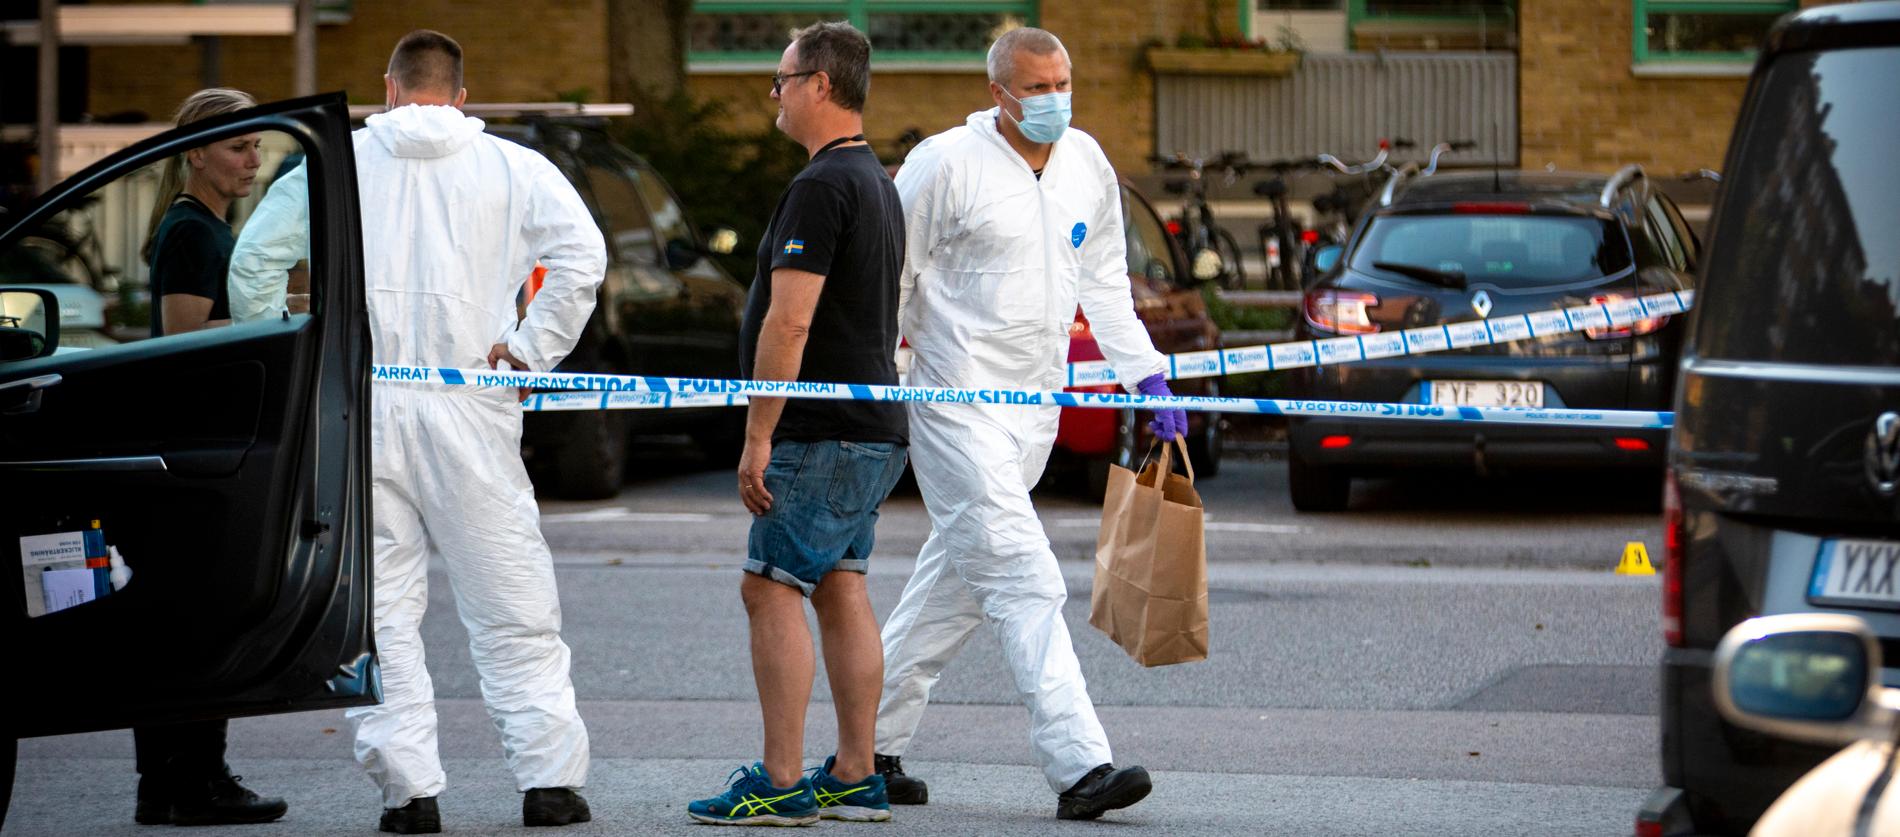 Mordet på en nybliven mamma och läkare i Malmö i måndags har skakat Sverige i grunden.